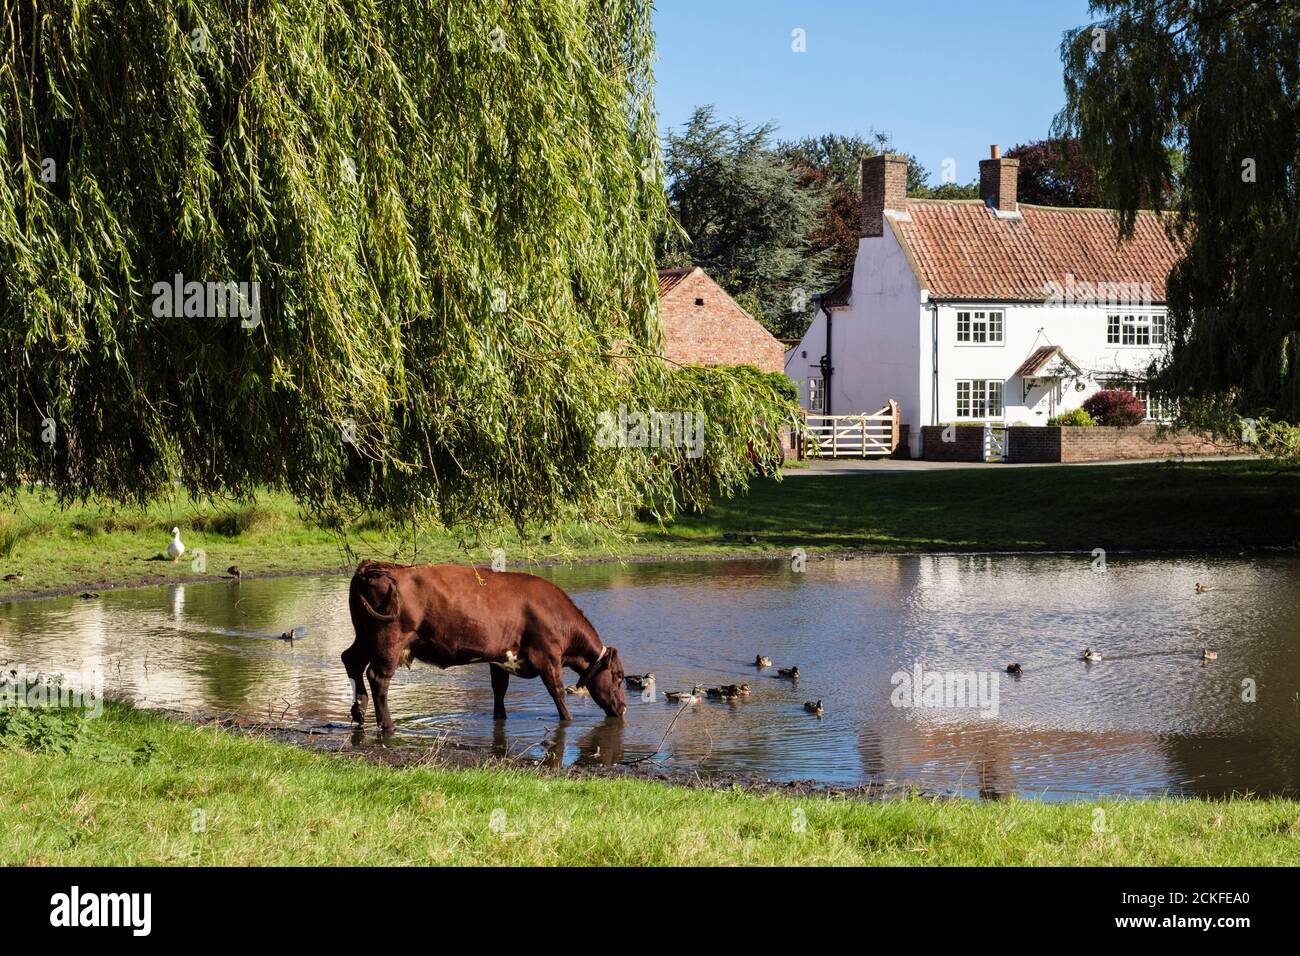 Vache de bétail libre de gamme boire de l'étang de canard sur un pittoresque village vert. Nun Monkton, York, Yorkshire du Nord, Angleterre, Royaume-Uni, Grande-Bretagne Banque D'Images